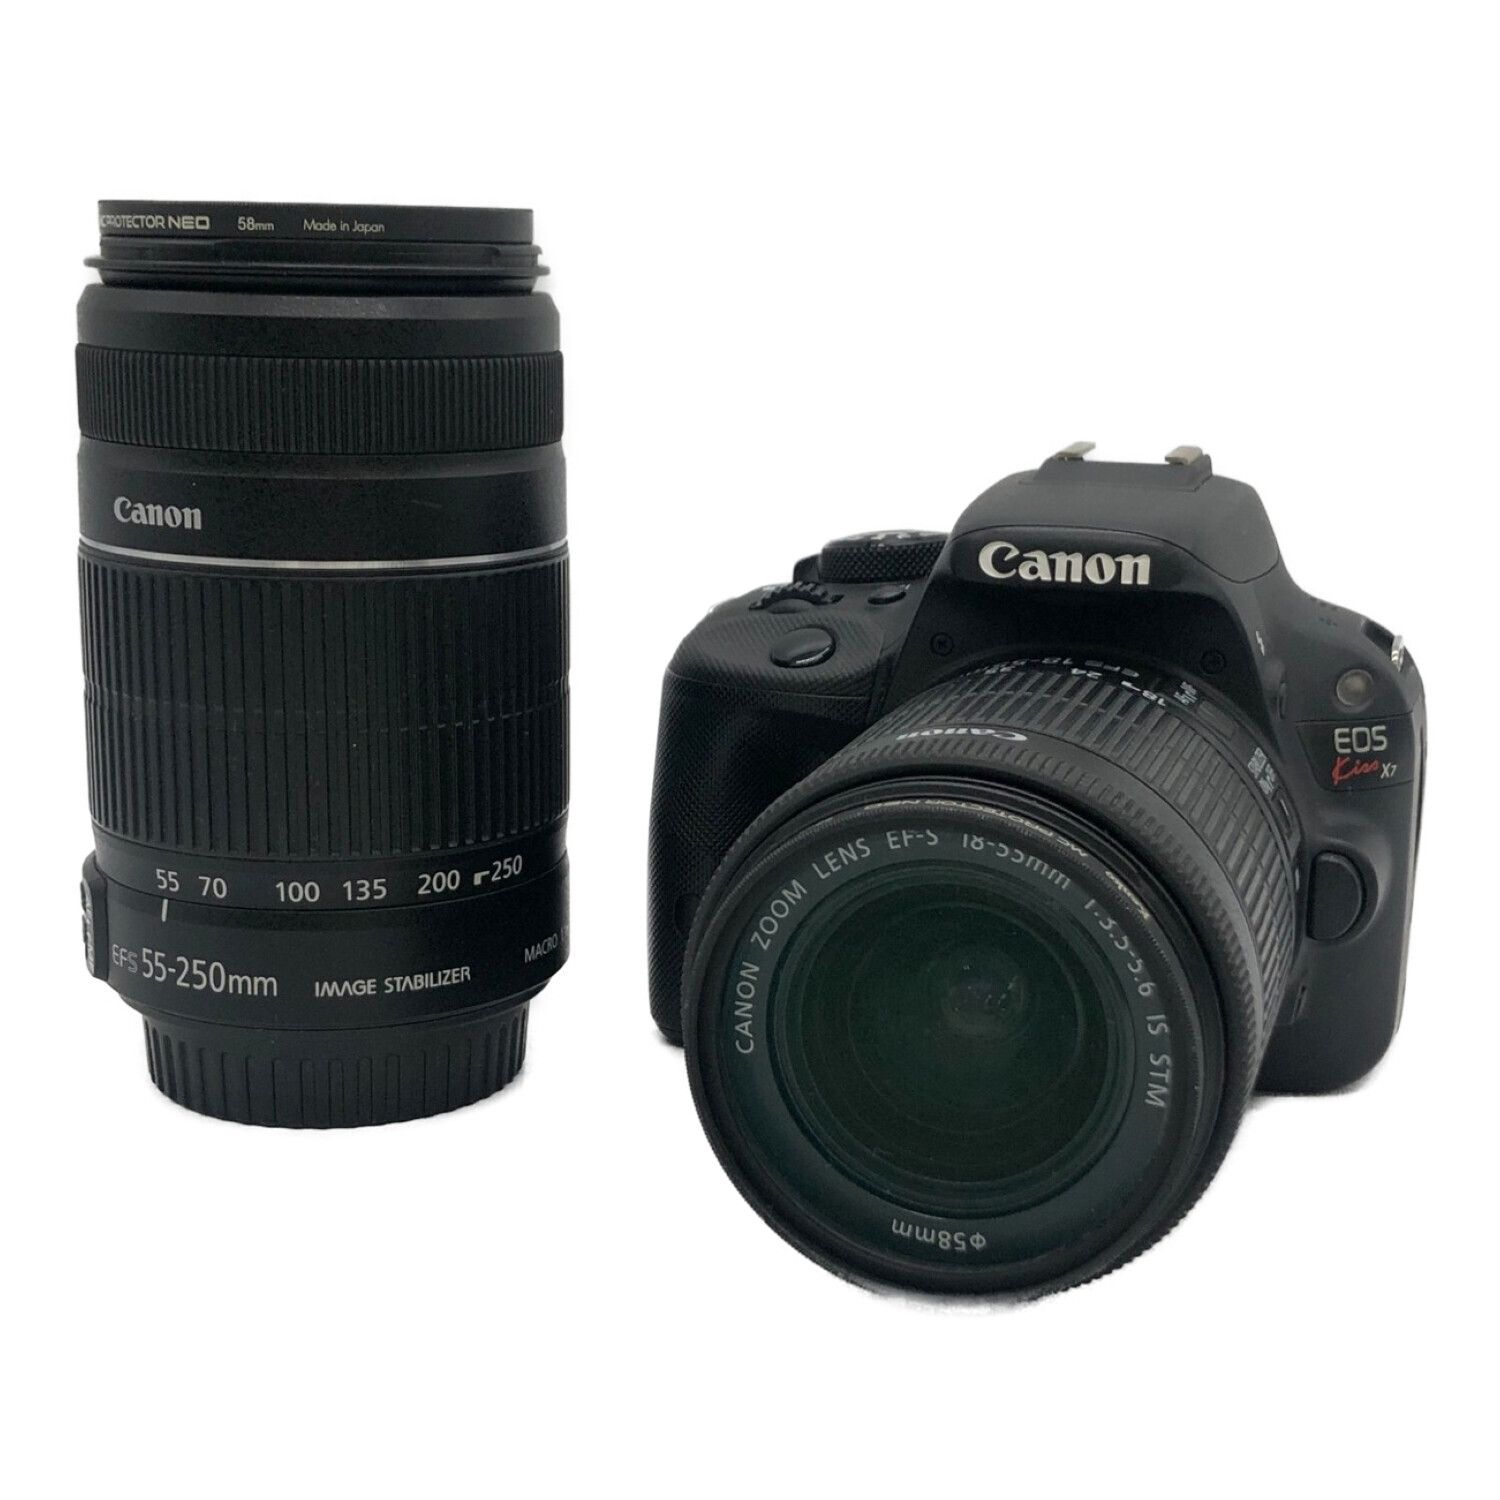 CANON (キャノン) デジタル一眼レフカメラ EOS KISS X7 ダブルズーム